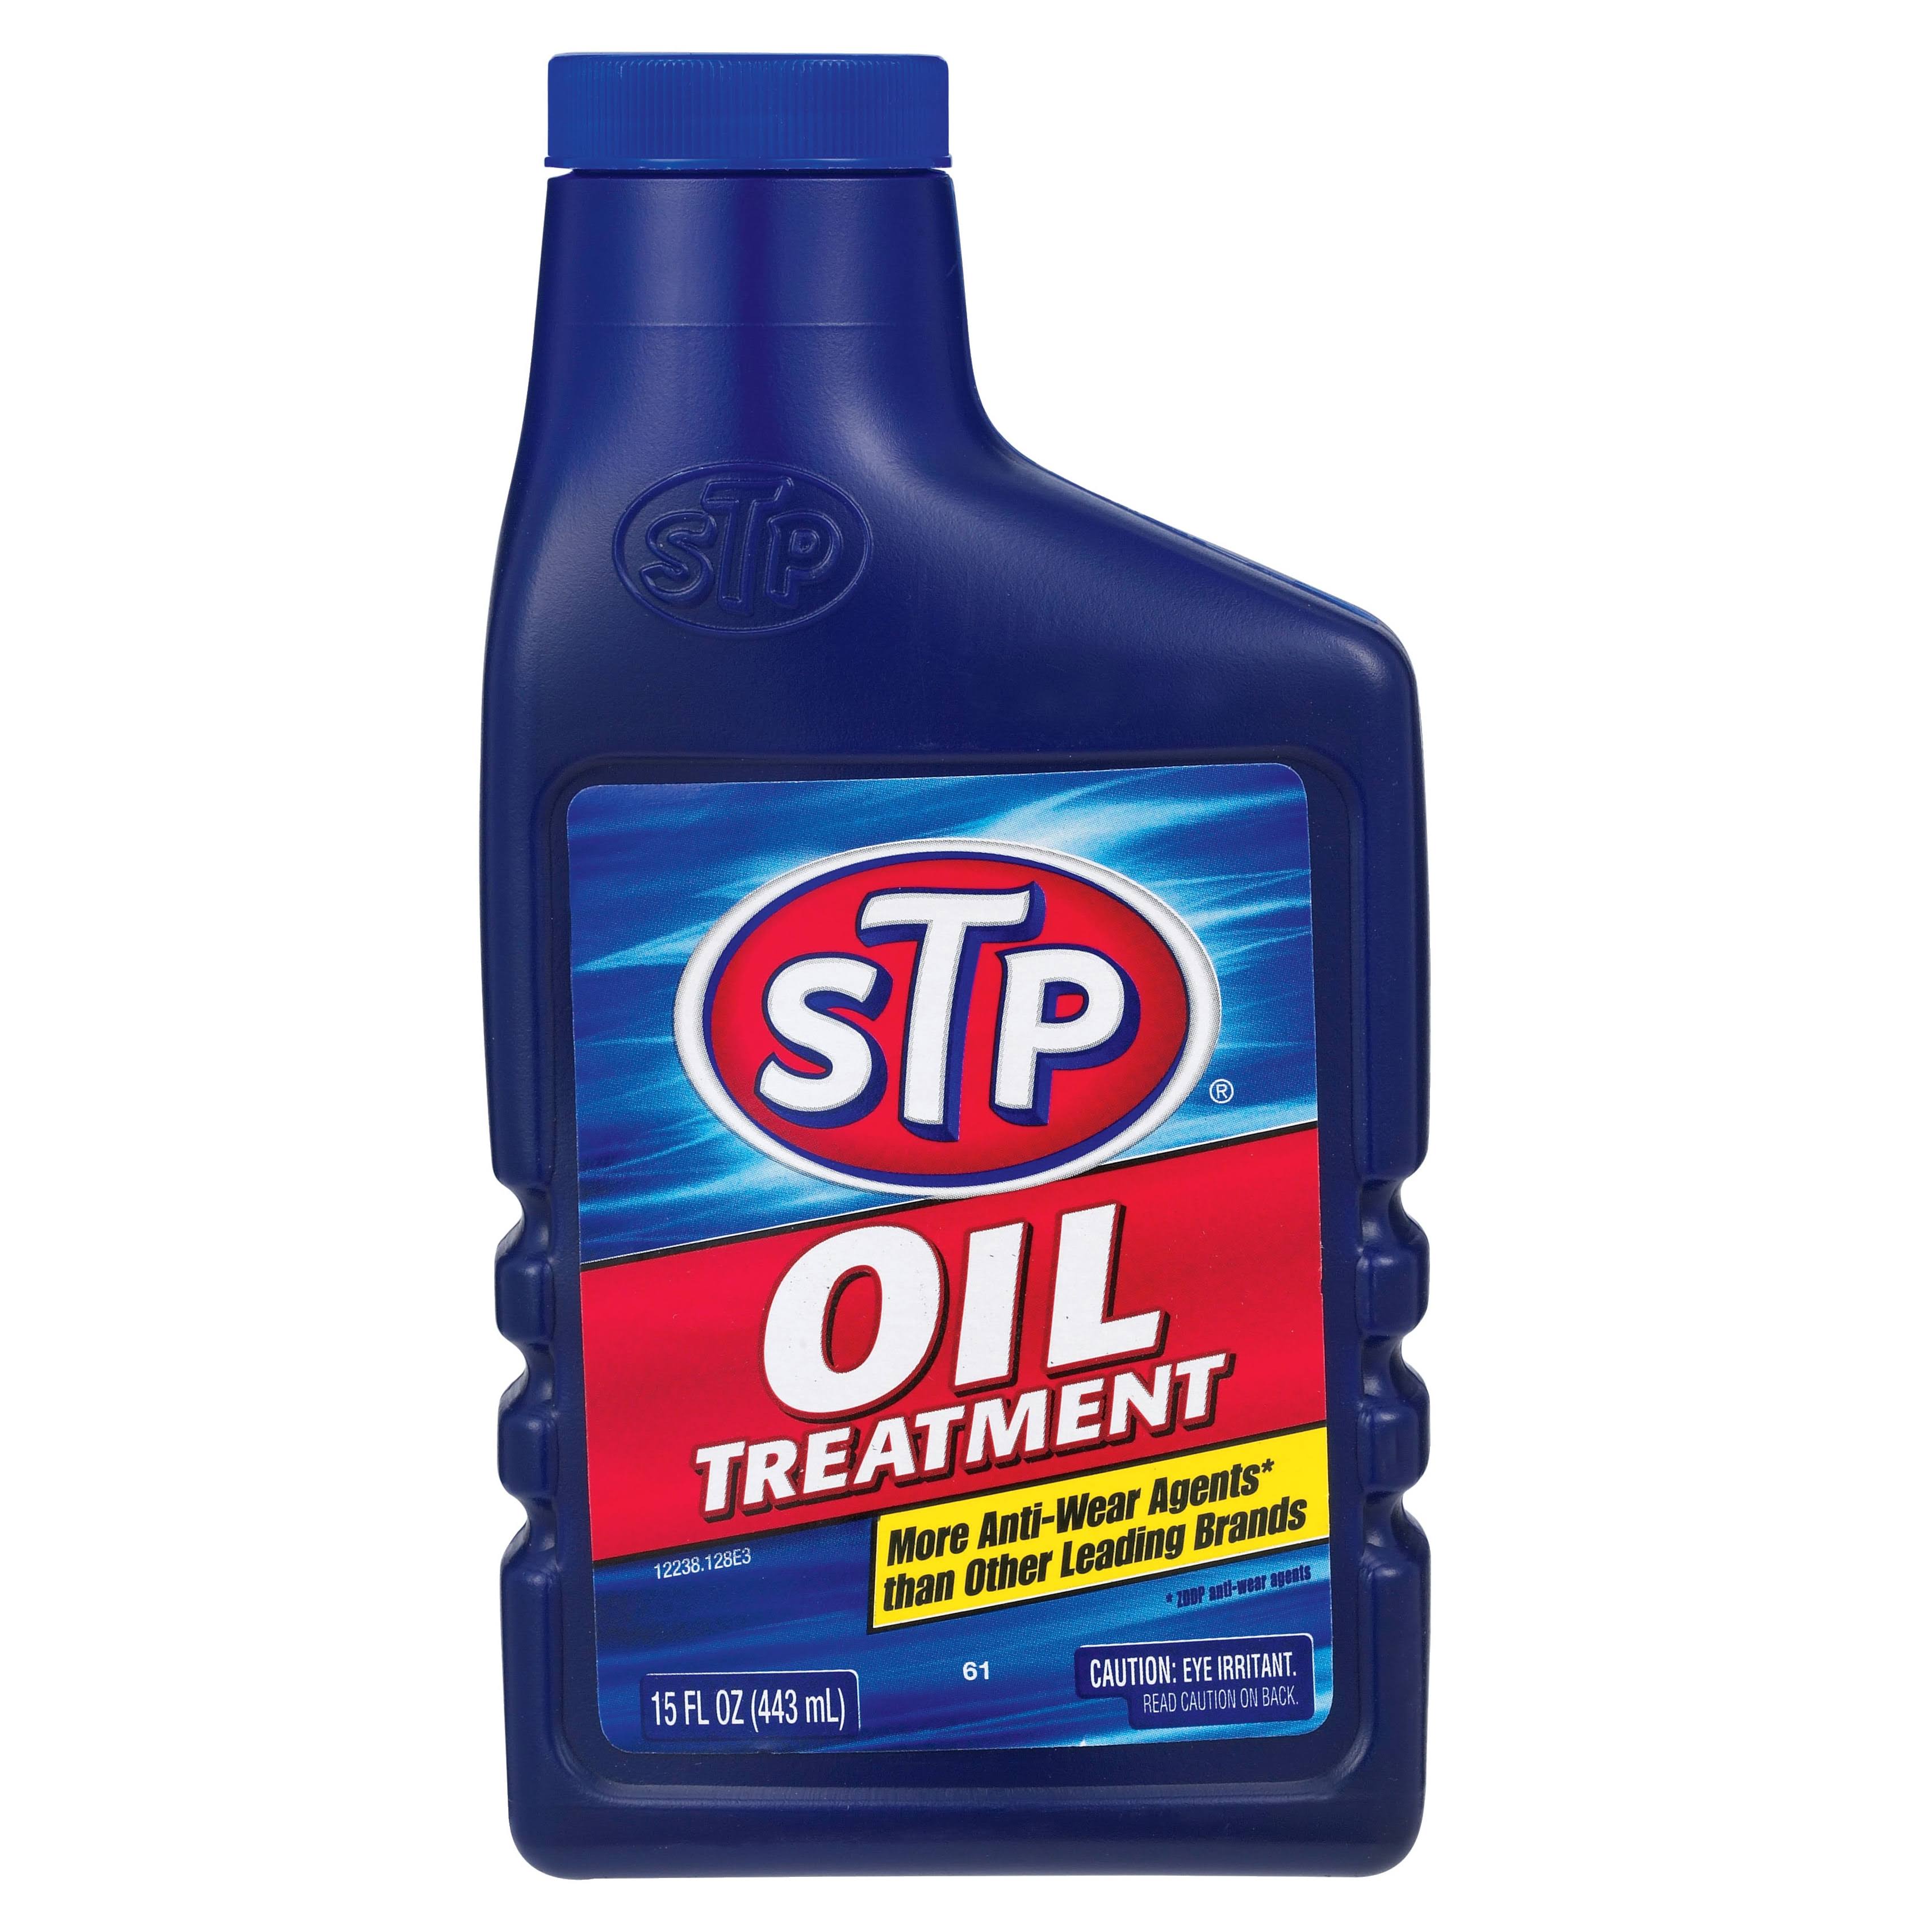 STP Oil Treatment - 15fl.oz